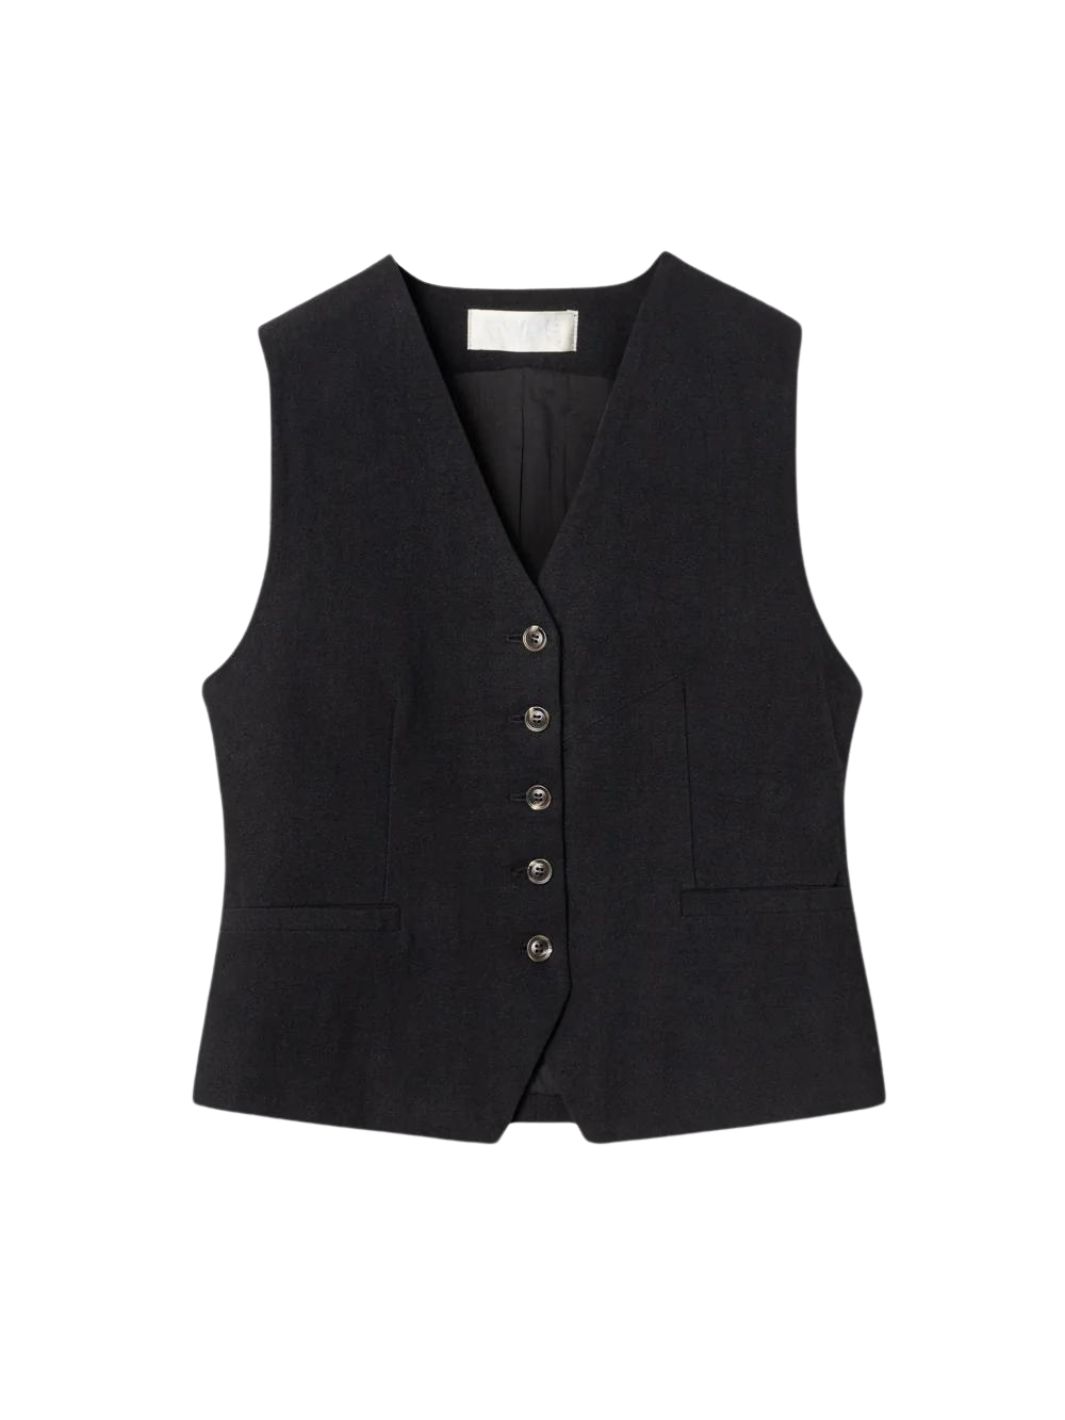 Fall Winter Spring Summer Tops Vest | Linen Waistcoat Jet Black